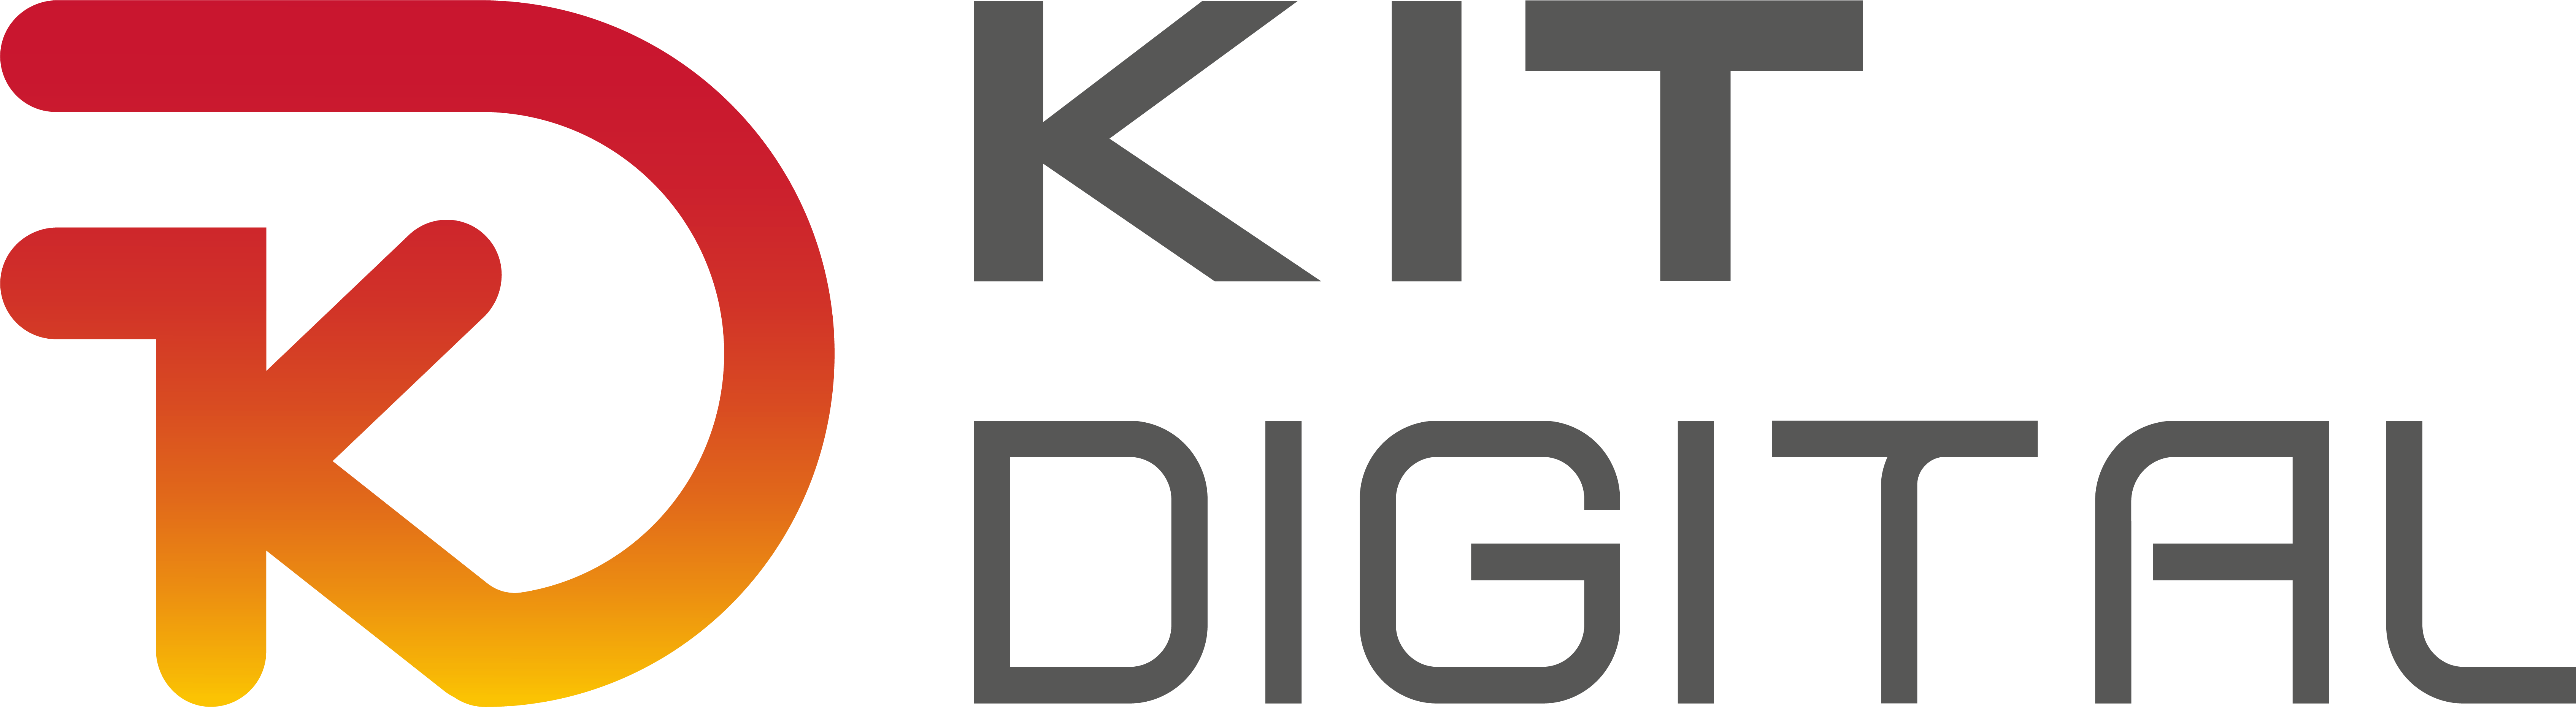 Logo Kit Digital Completo